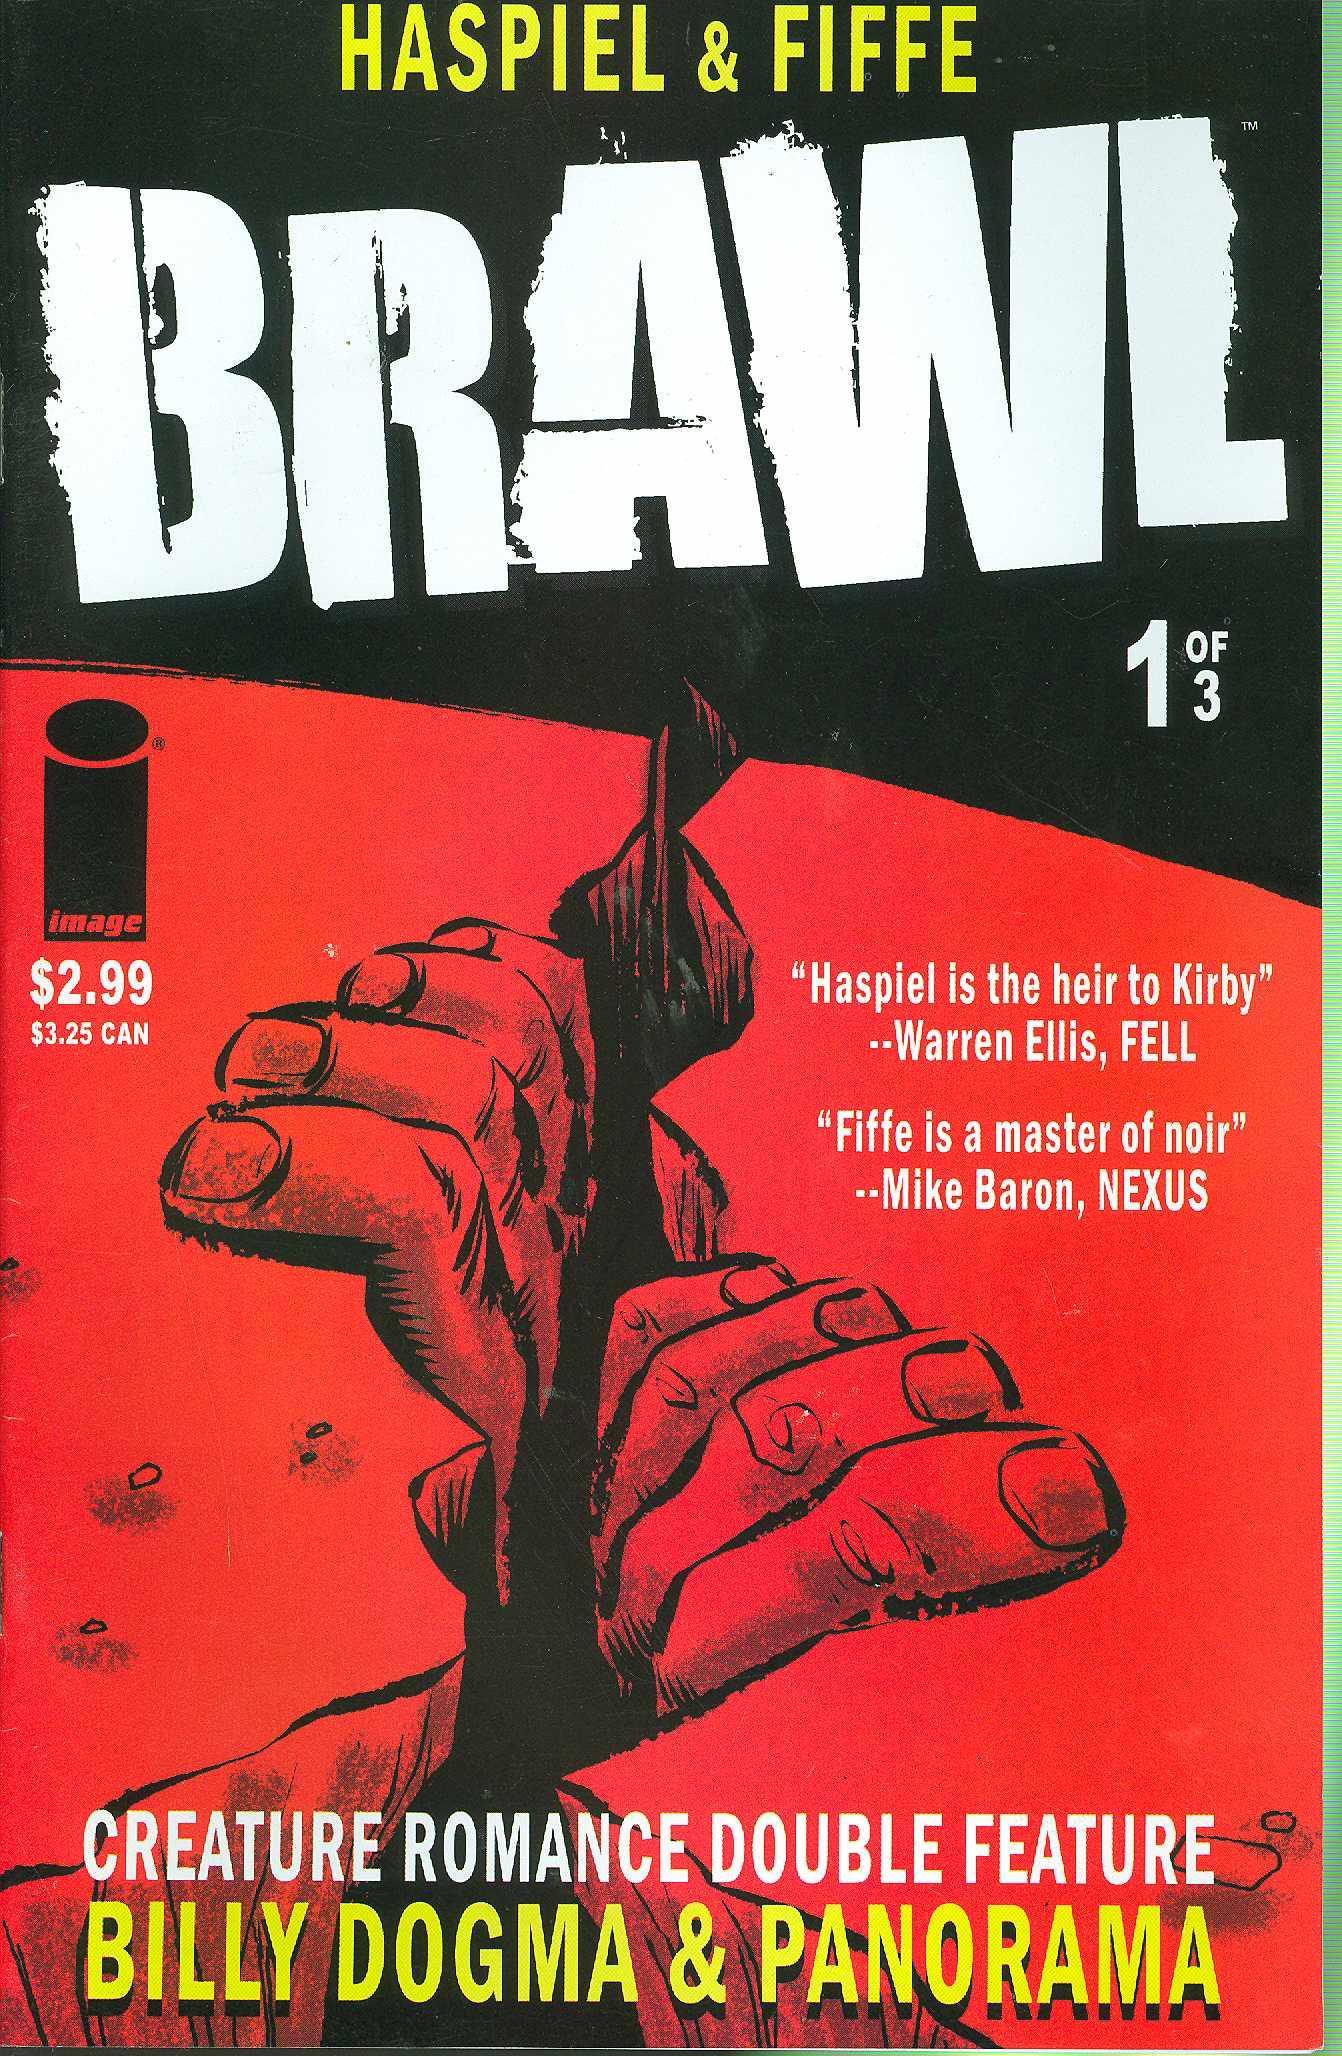 BRAWL #1 (OF 3) - Kings Comics